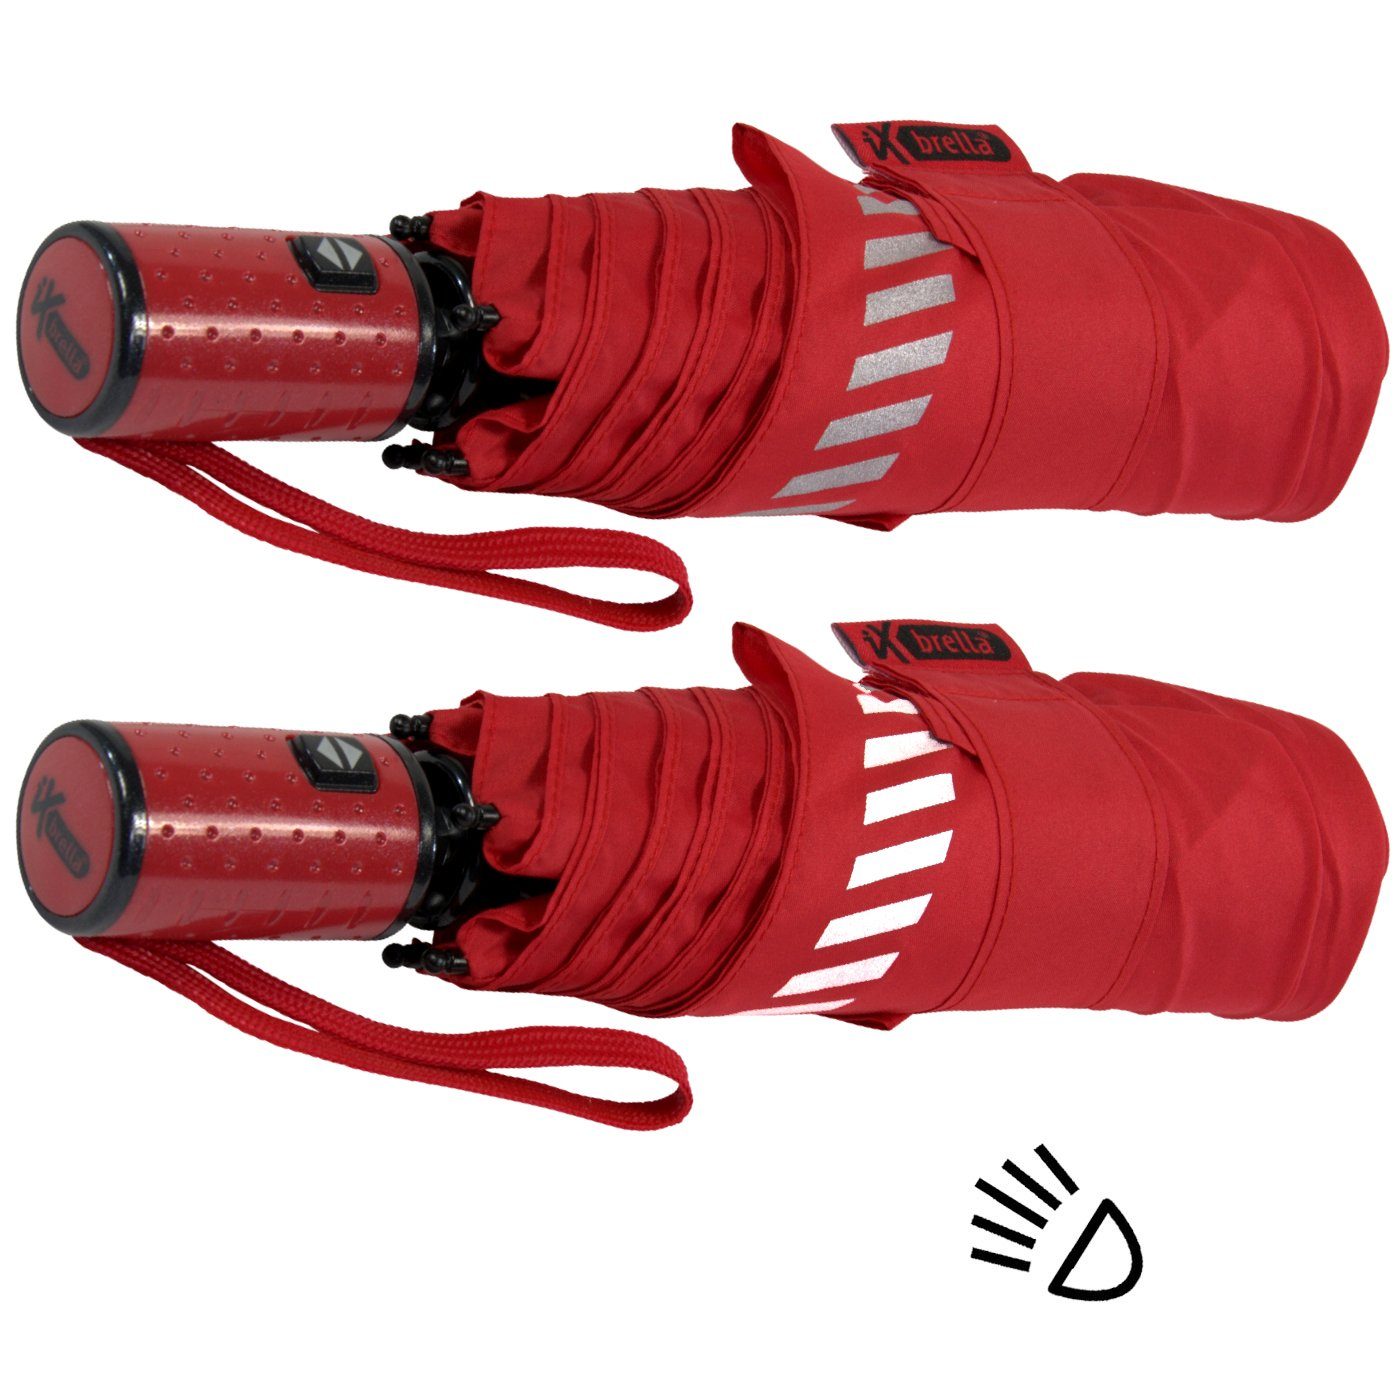 Kinderschirm rot Reflex-Streifen durch Auf-Zu-Automatik, mit Taschenregenschirm Sicherheit - reflektierend, iX-brella